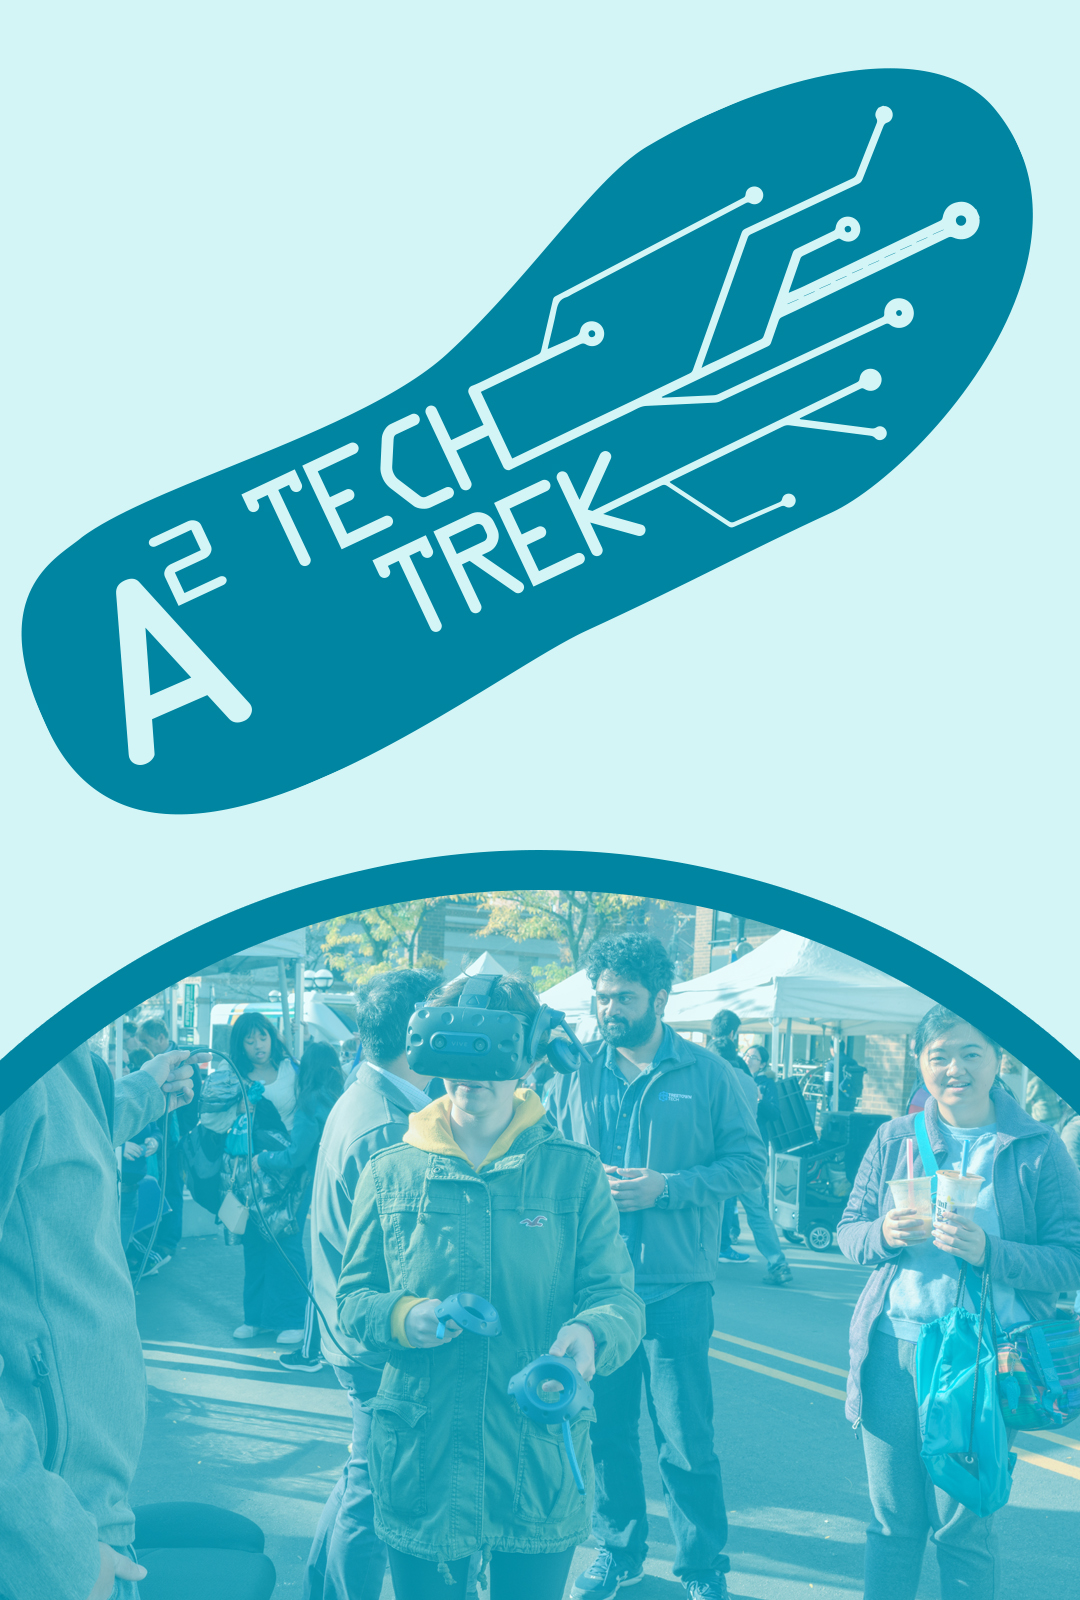 Tech Trek - September 22, 2023